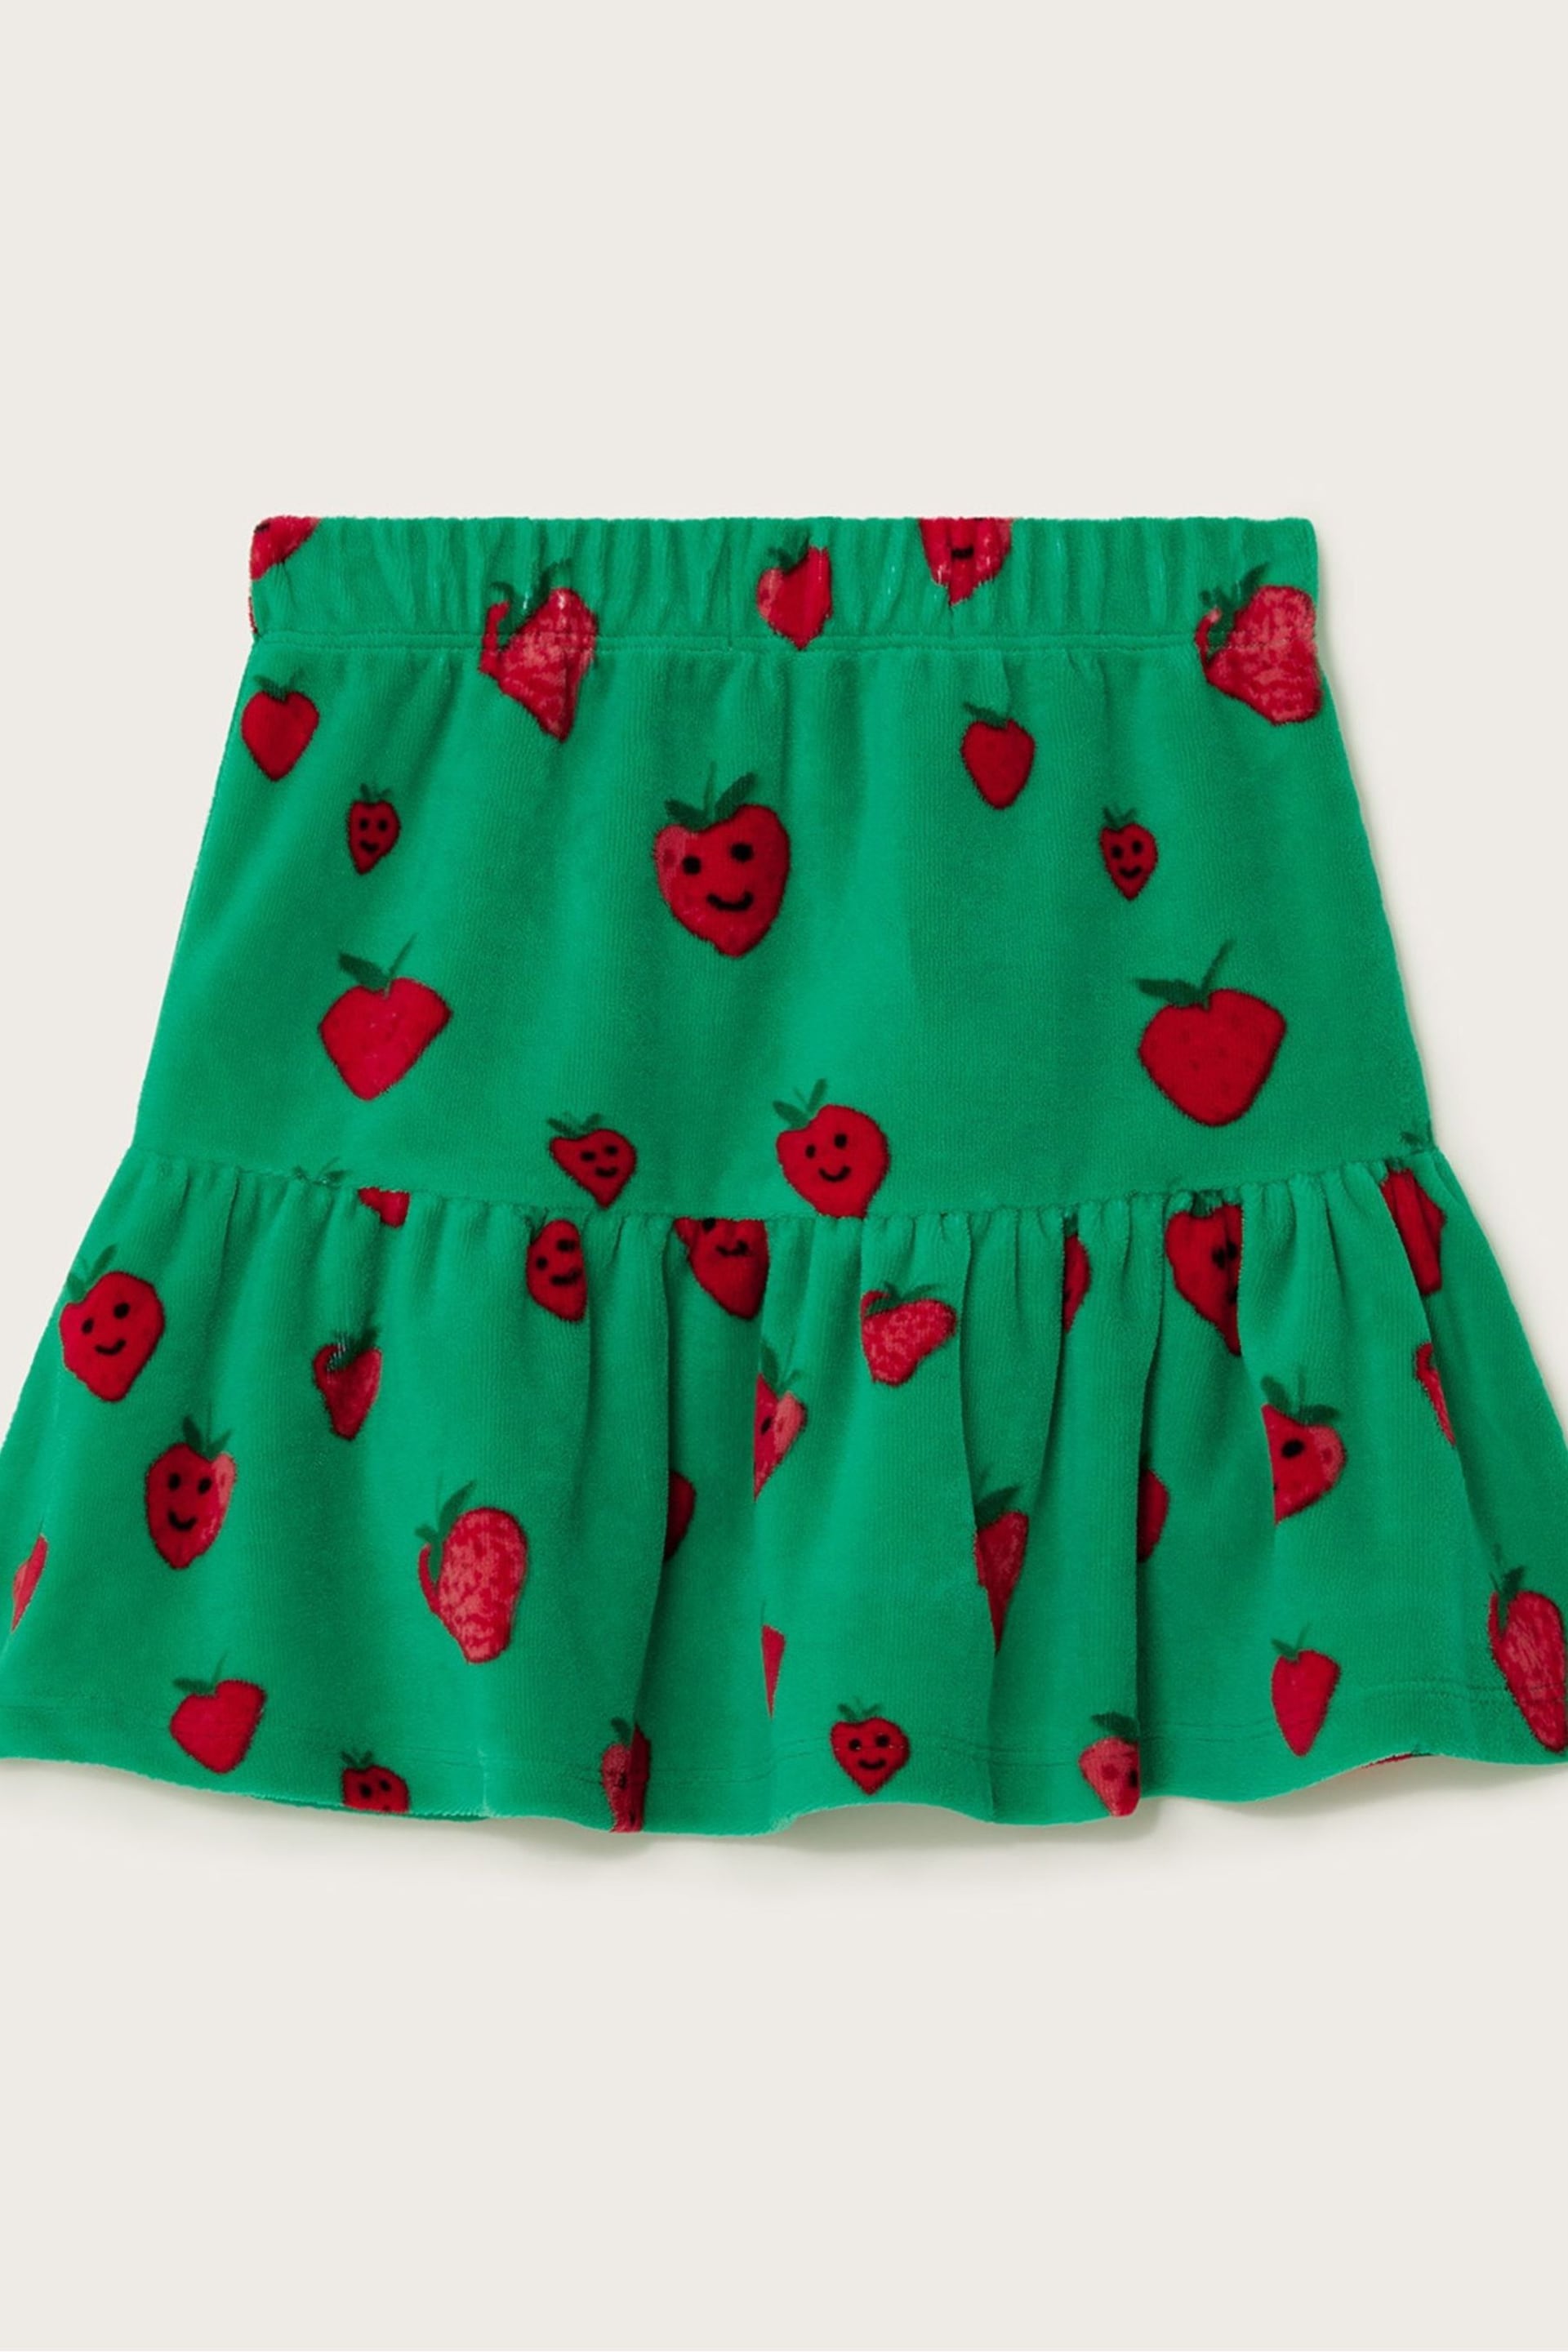 Monsoon Green Strawberry Velour Skirt - Image 2 of 3